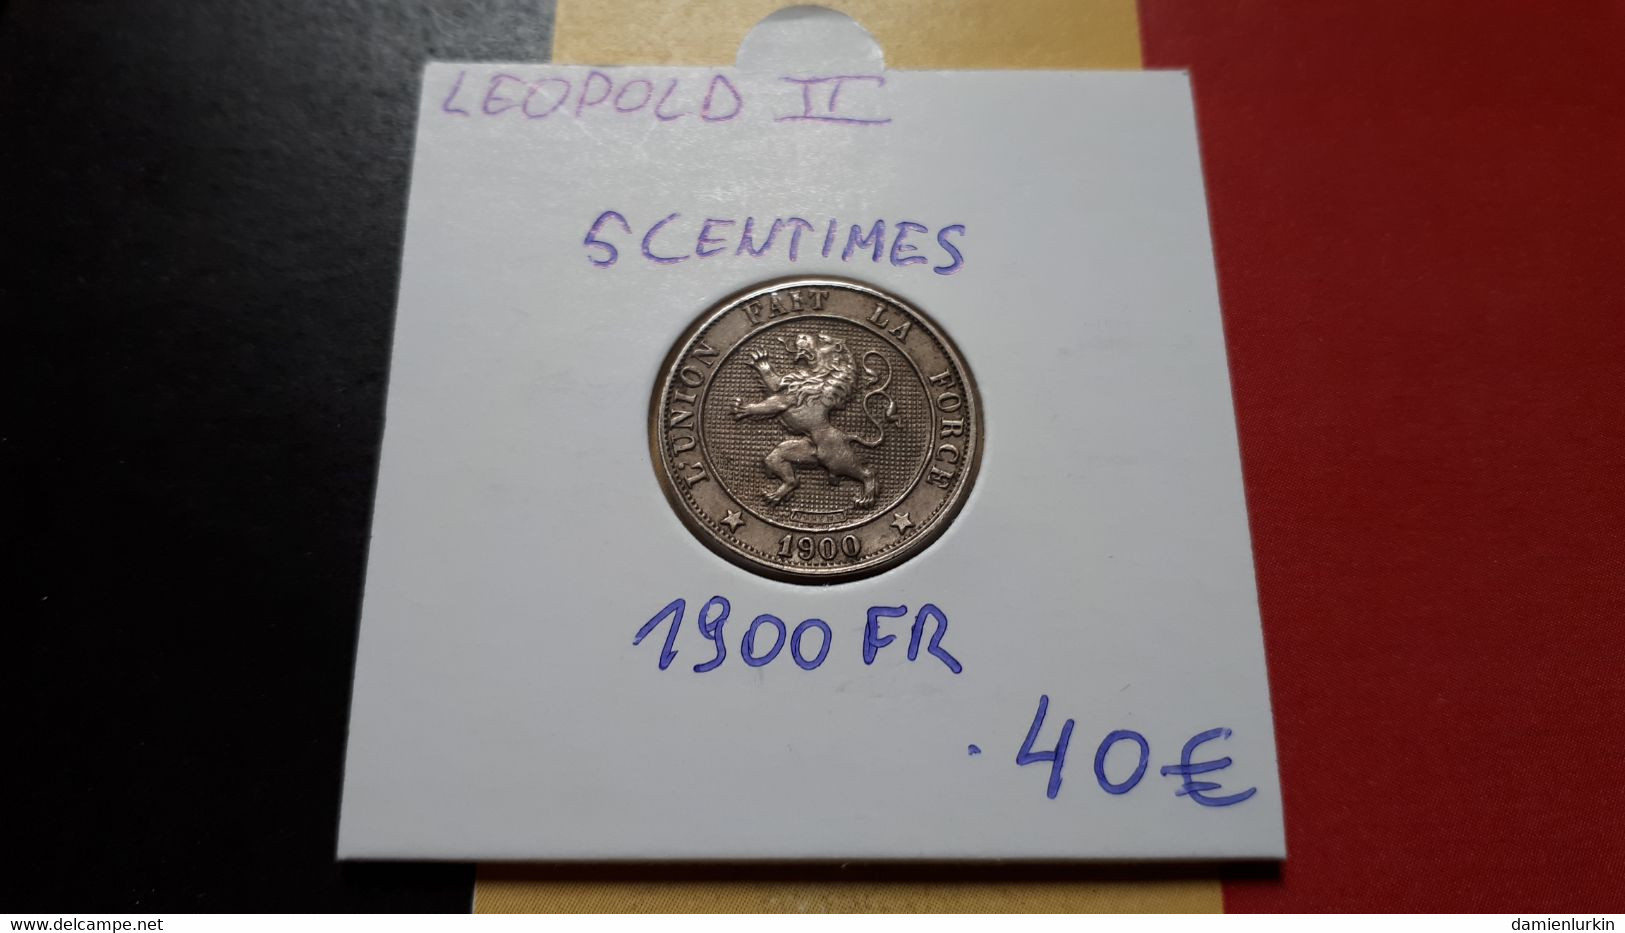 BELGIQUE LEOPOLD II RARE ET SUPERBE PRESQUE FDC 5 CENTIMES 1900 FR - 5 Cents